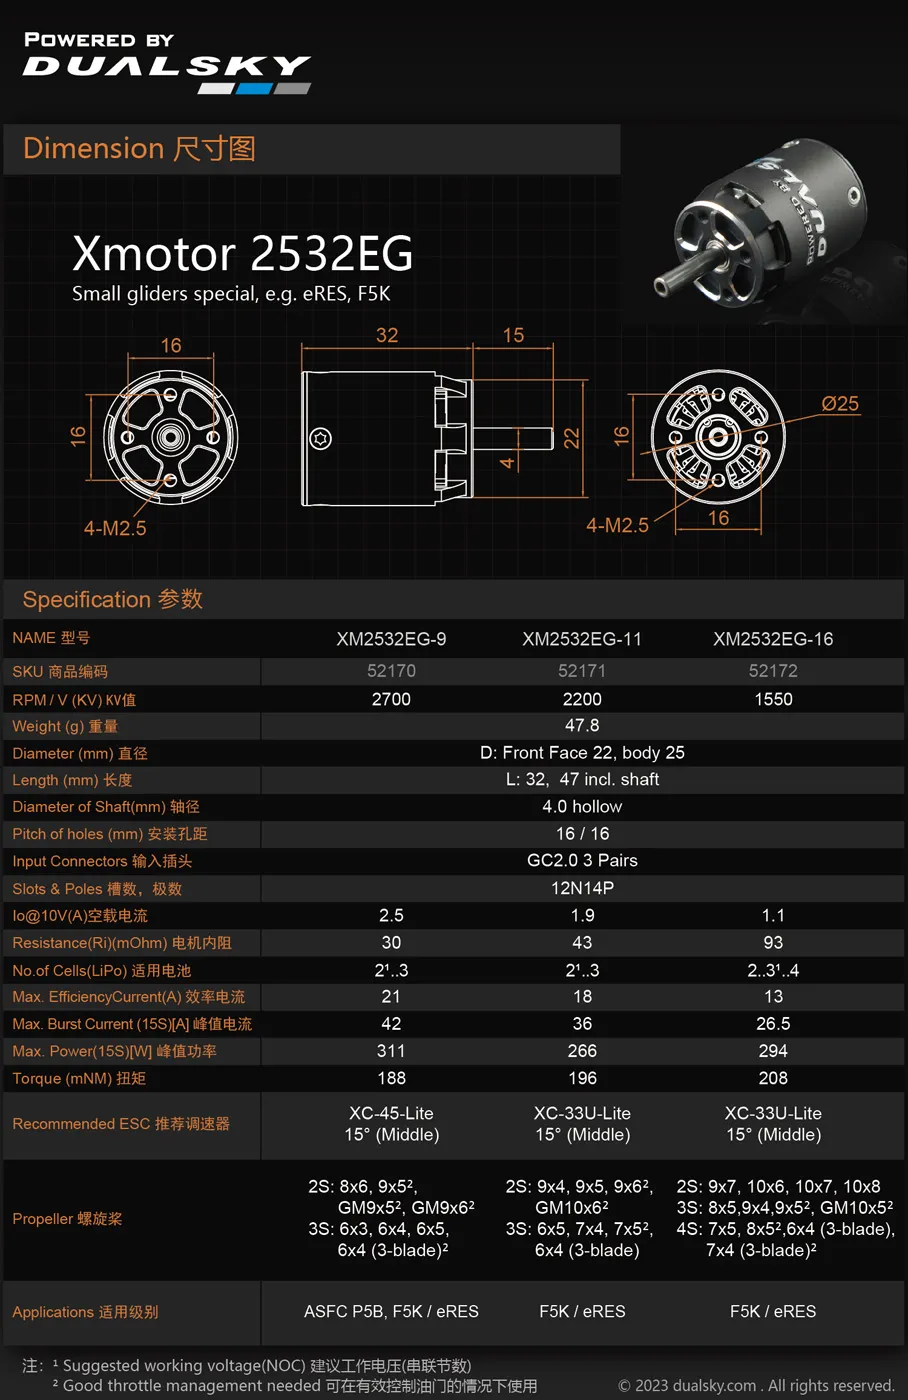 デュアルスカイ XM2532EG-11 (2200KV) ハウジング付き新型アウトランナー・インランナー グライダー用モーター 52171